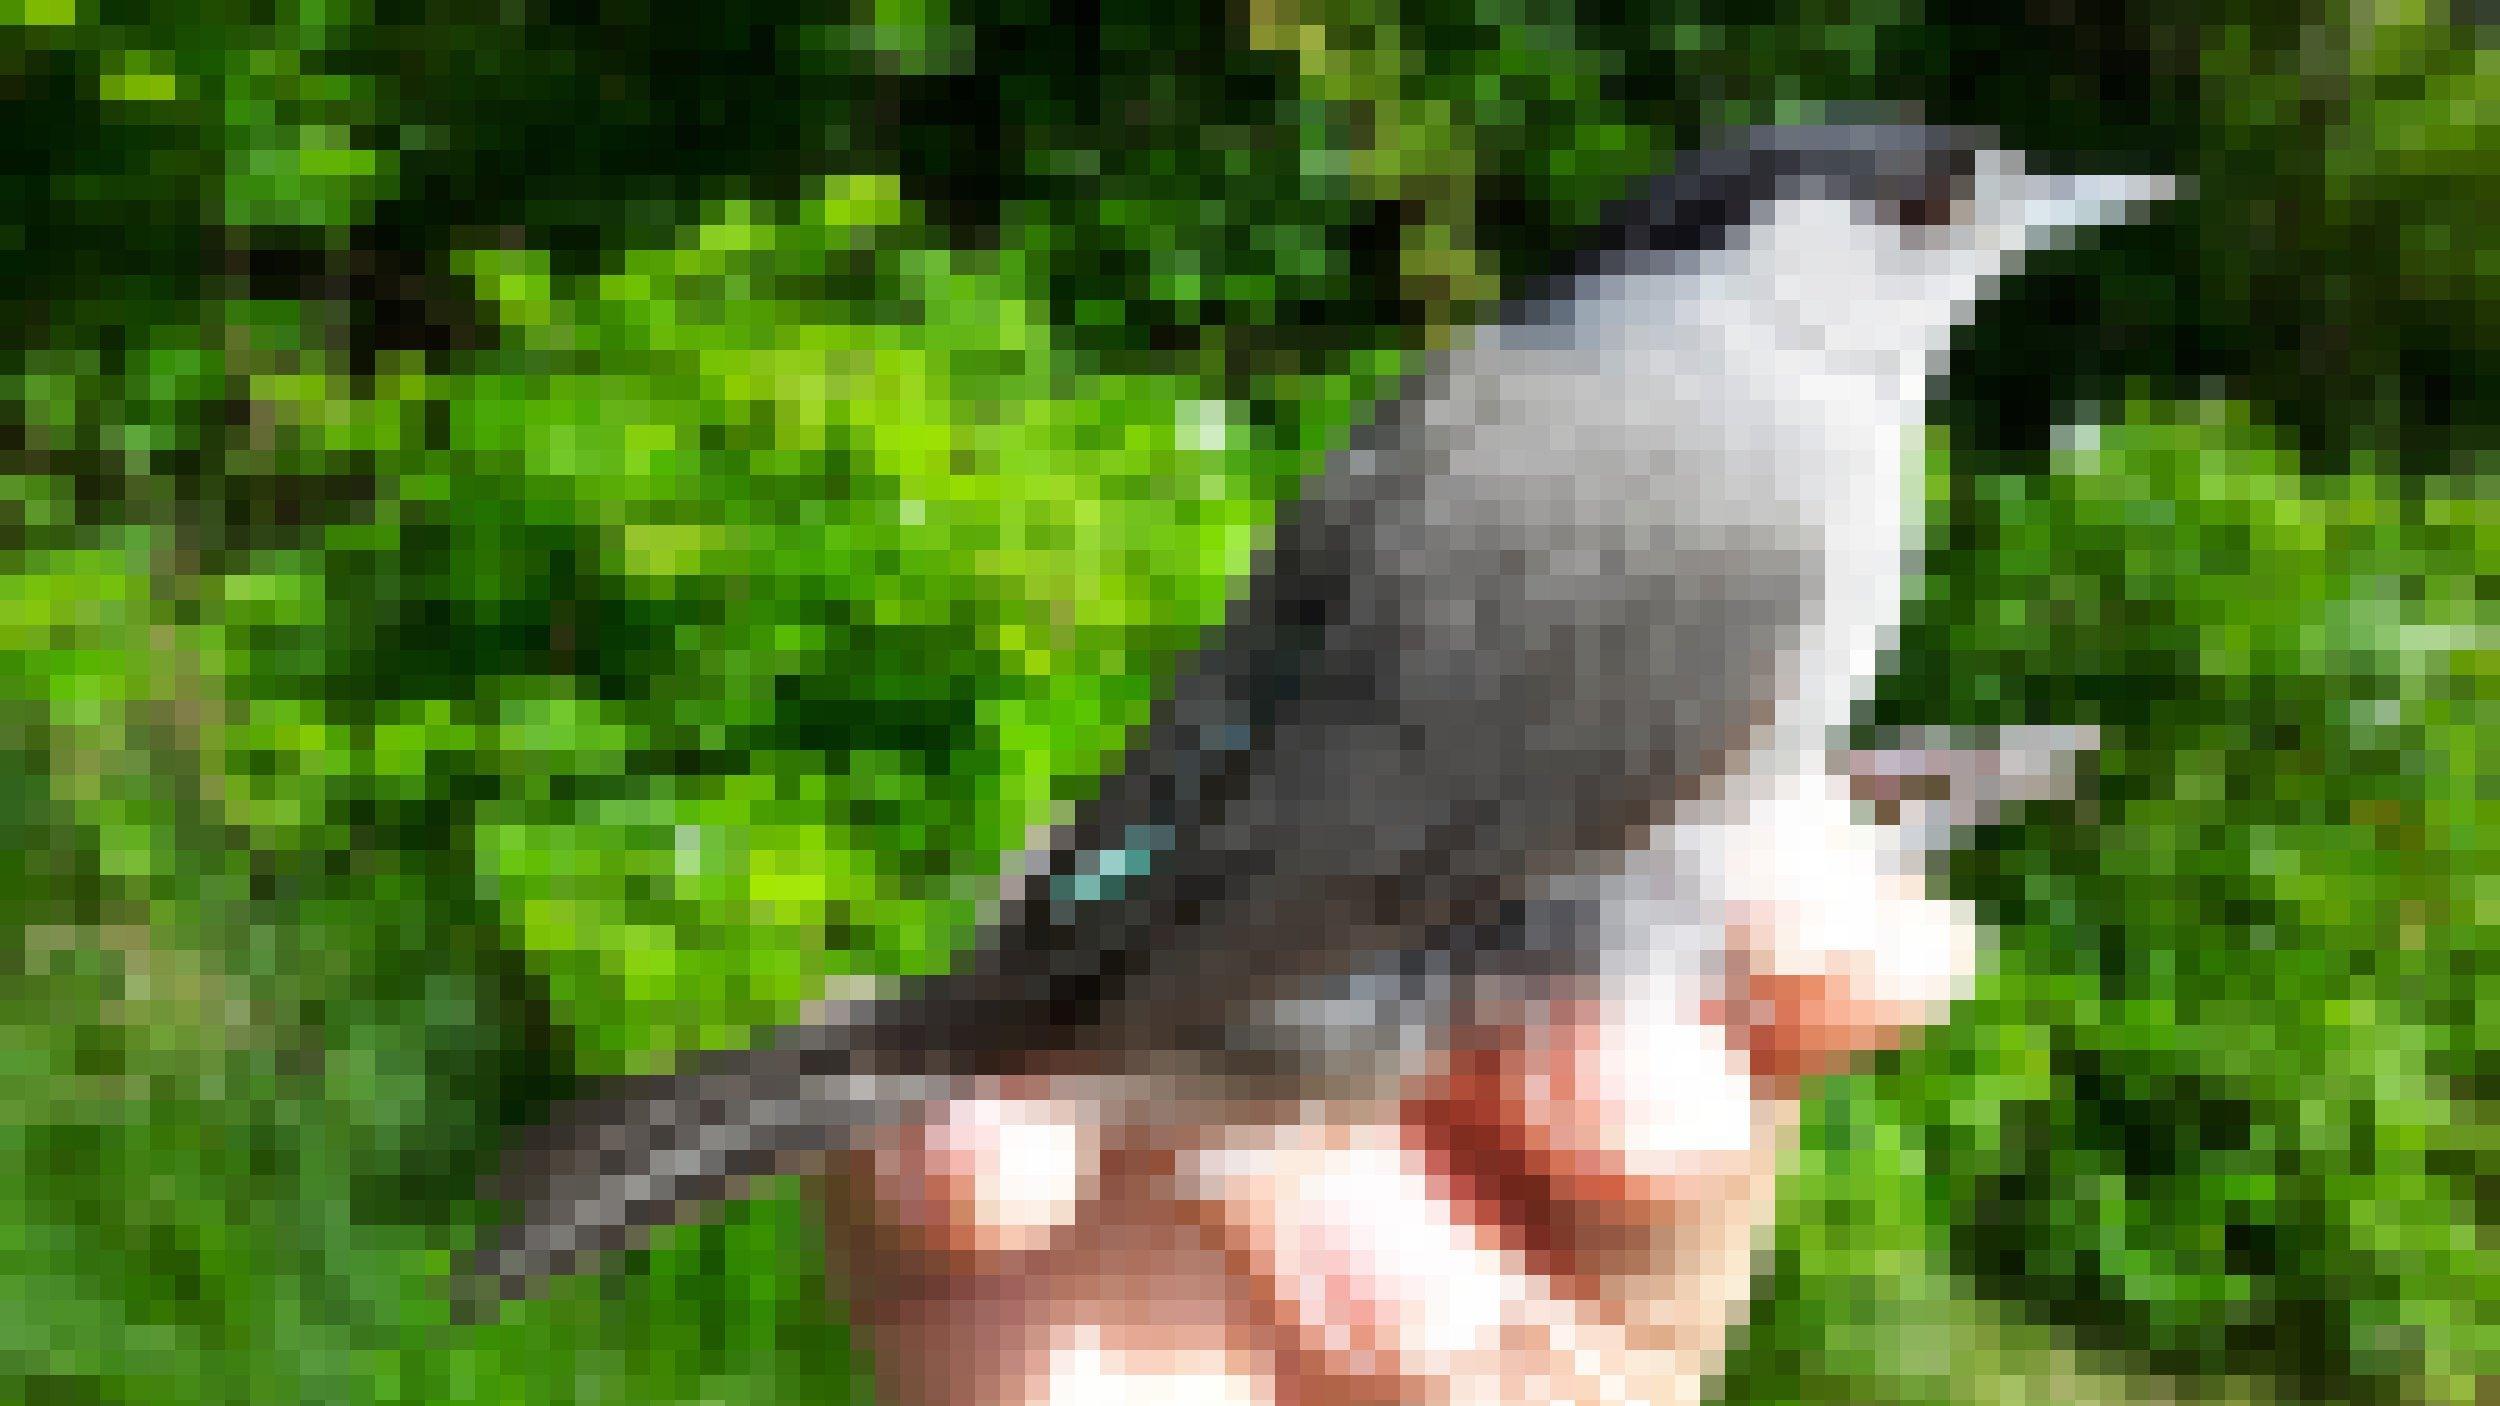 Ein Mönchsgrasmückenmännchen, ein grauer Vogel mit schwarzer Kappe, mit einem kleinen Peilsender auf dem Rücken